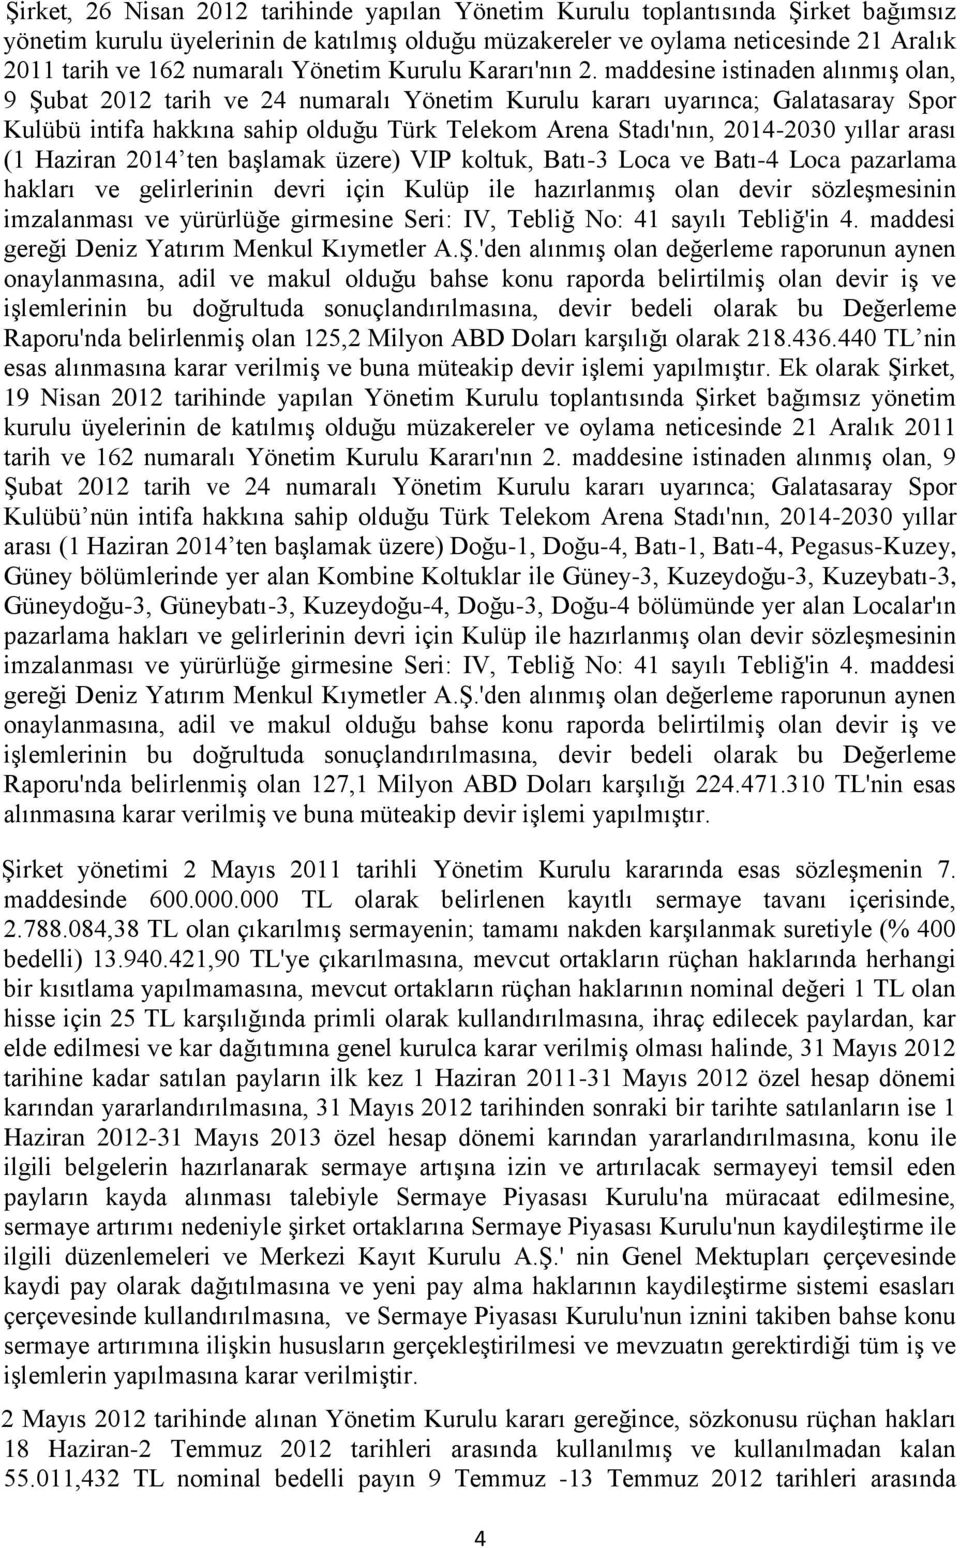 maddesine istinaden alınmış olan, 9 Şubat 2012 tarih ve 24 numaralı Yönetim Kurulu kararı uyarınca; Galatasaray Spor Kulübü intifa hakkına sahip olduğu Türk Telekom Arena Stadı'nın, 2014-2030 yıllar